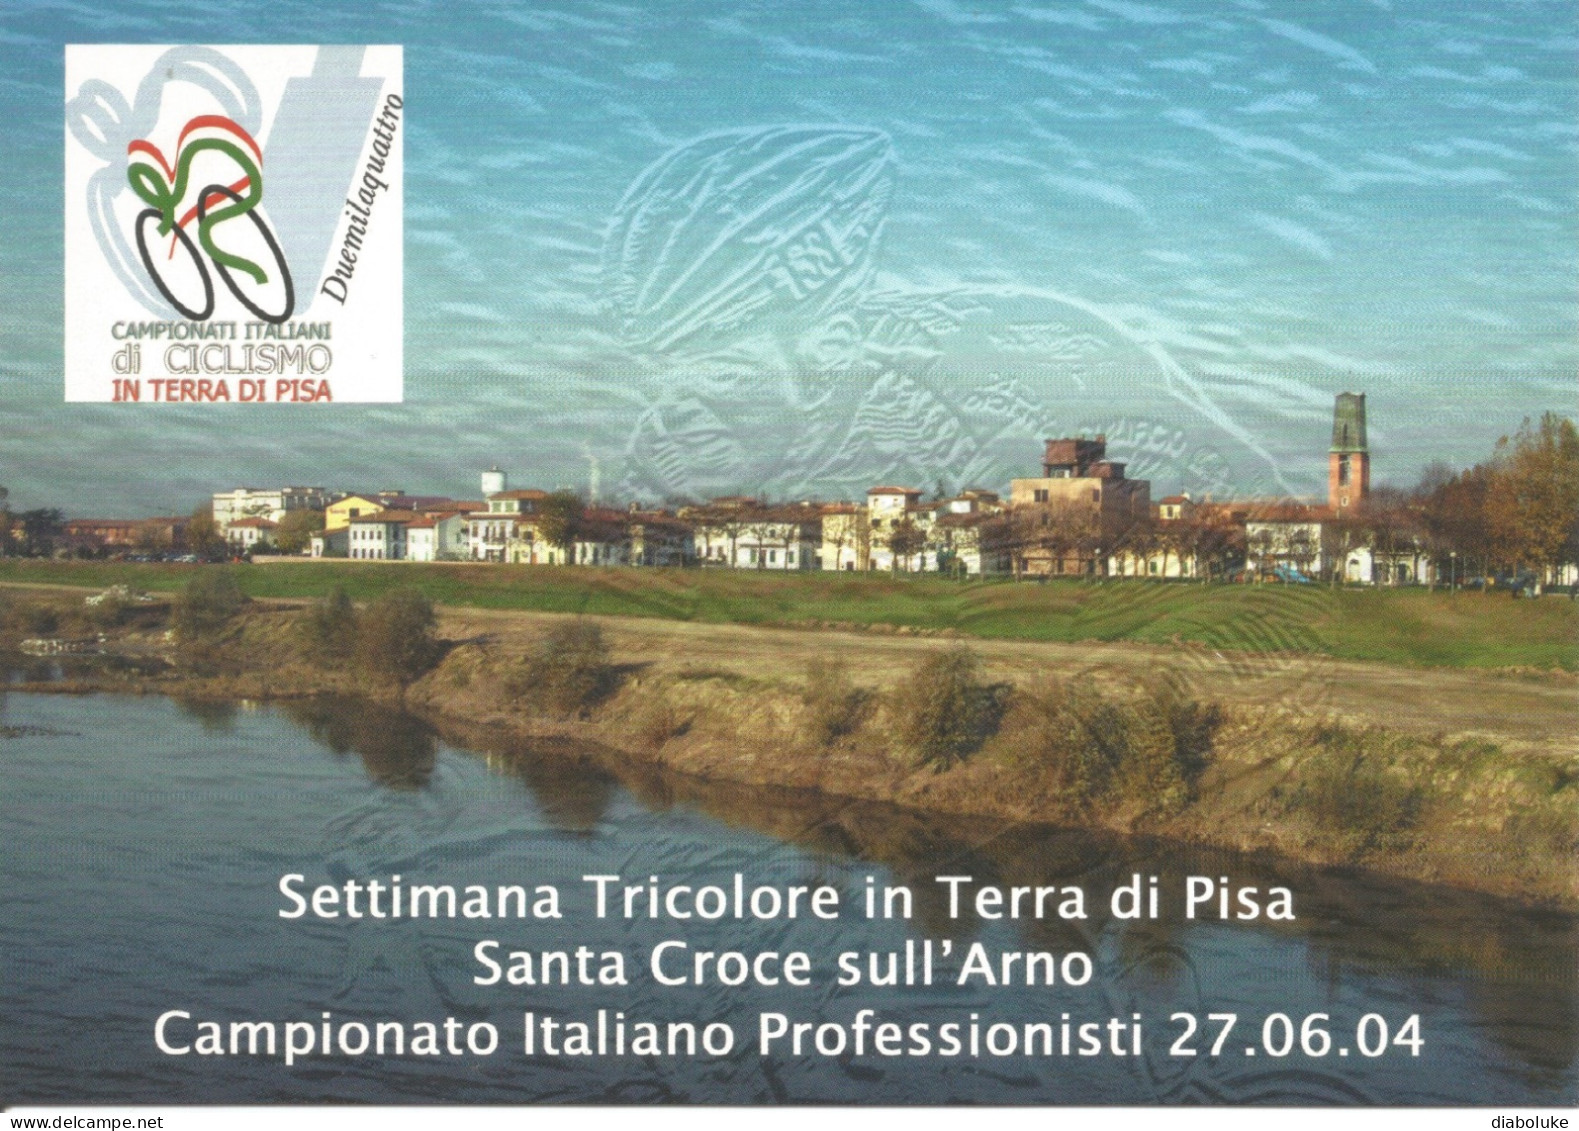 (VARIOUS) SETTIMANA TRICOLORE IN TERRA DI PISA, SANTA CROCE SULL'ARNO, 27/6/2004 - Cartolina Nuova - Manifestations